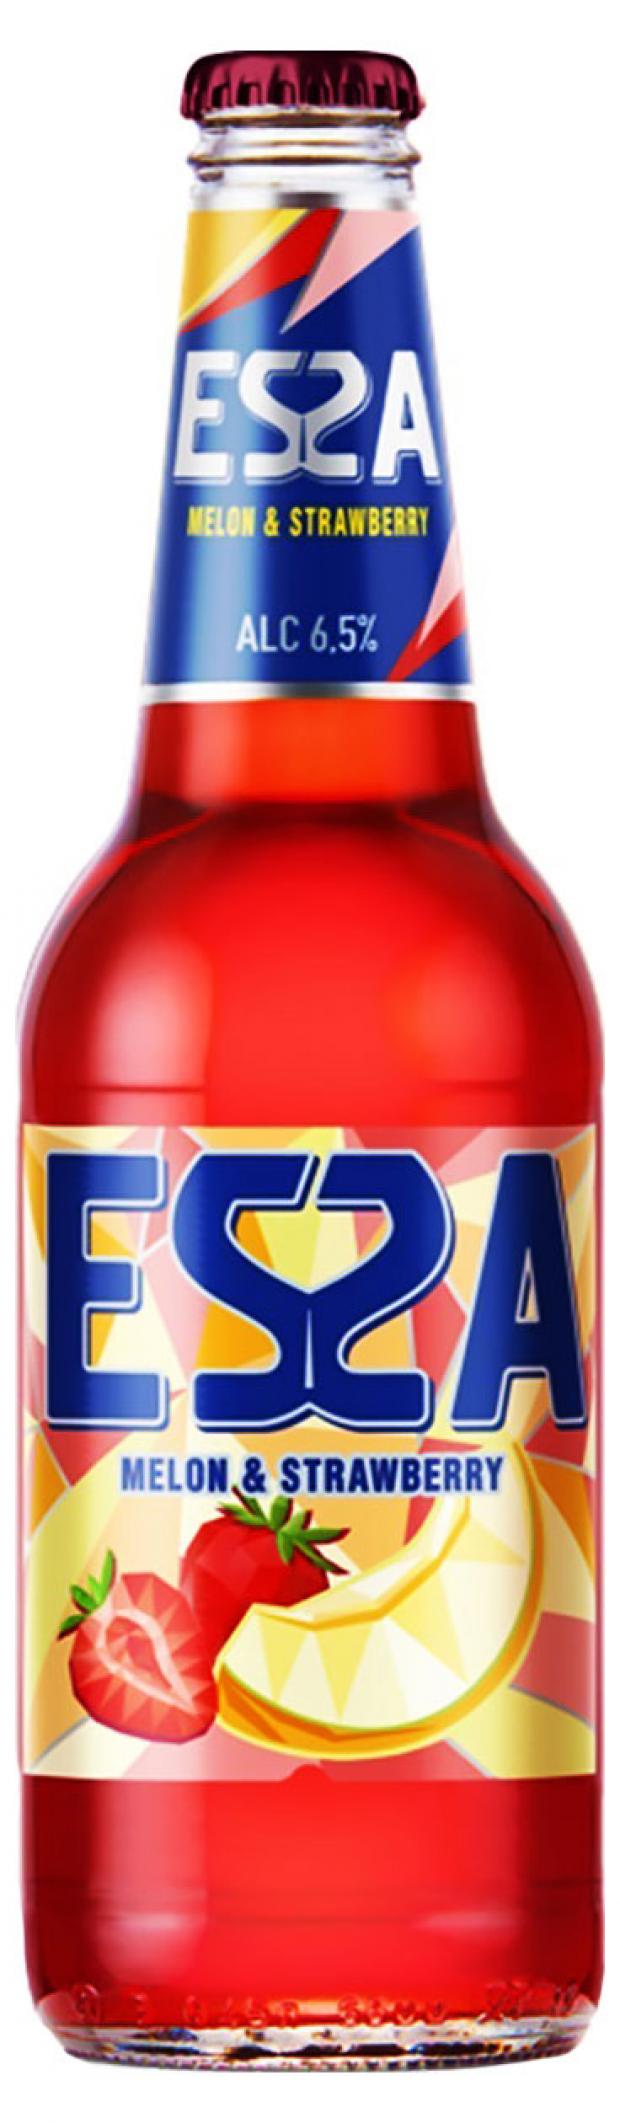 Пивной напиток Эсса дыня\клубника 6,5%  0,4л сб